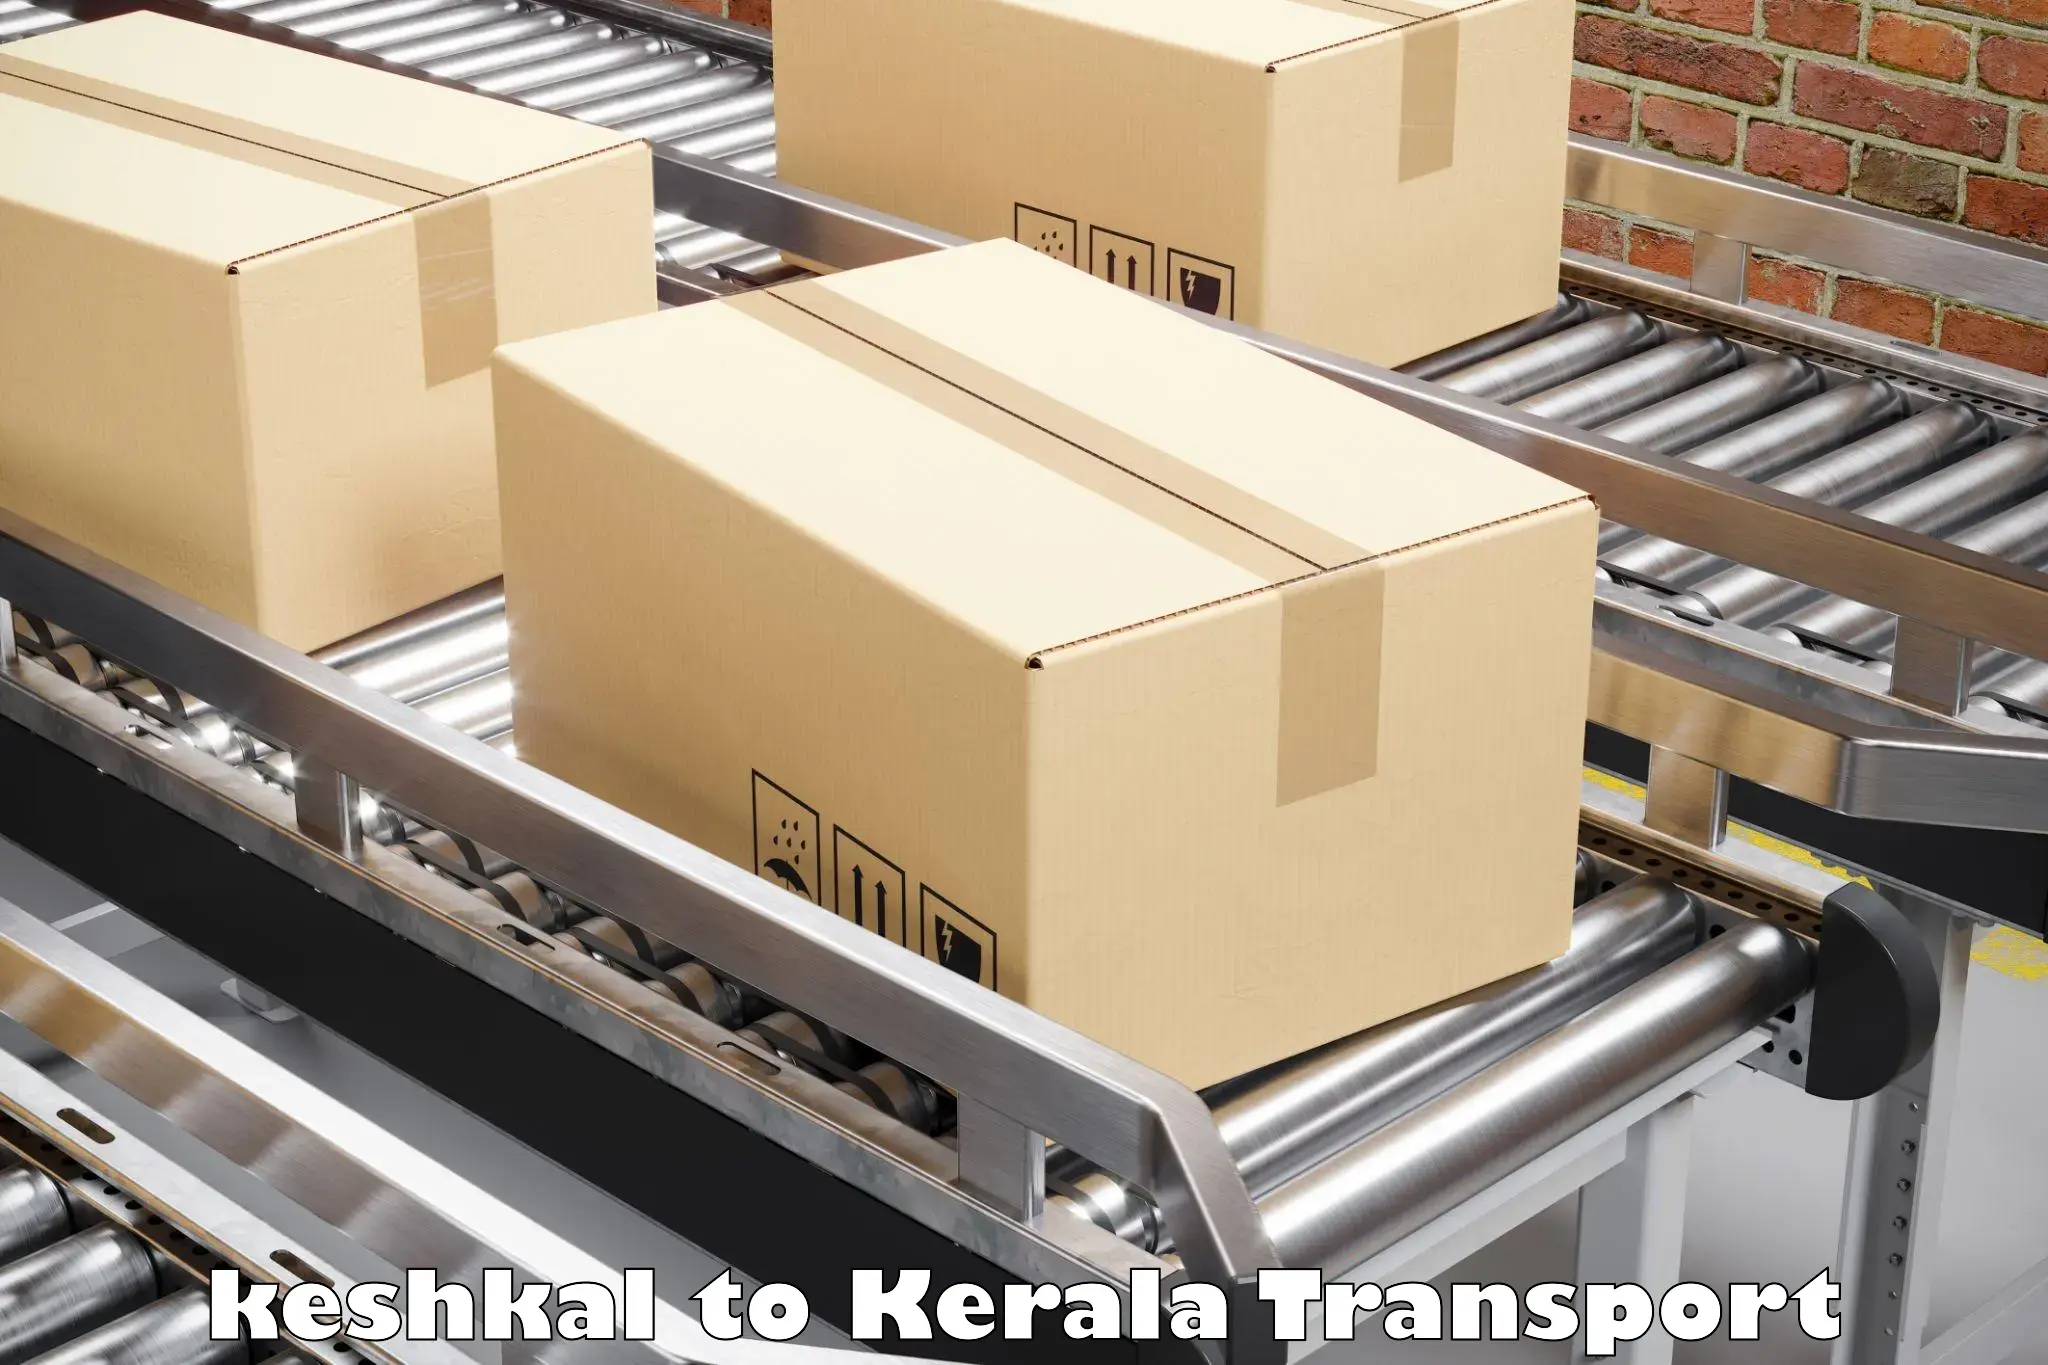 Interstate goods transport keshkal to Palai